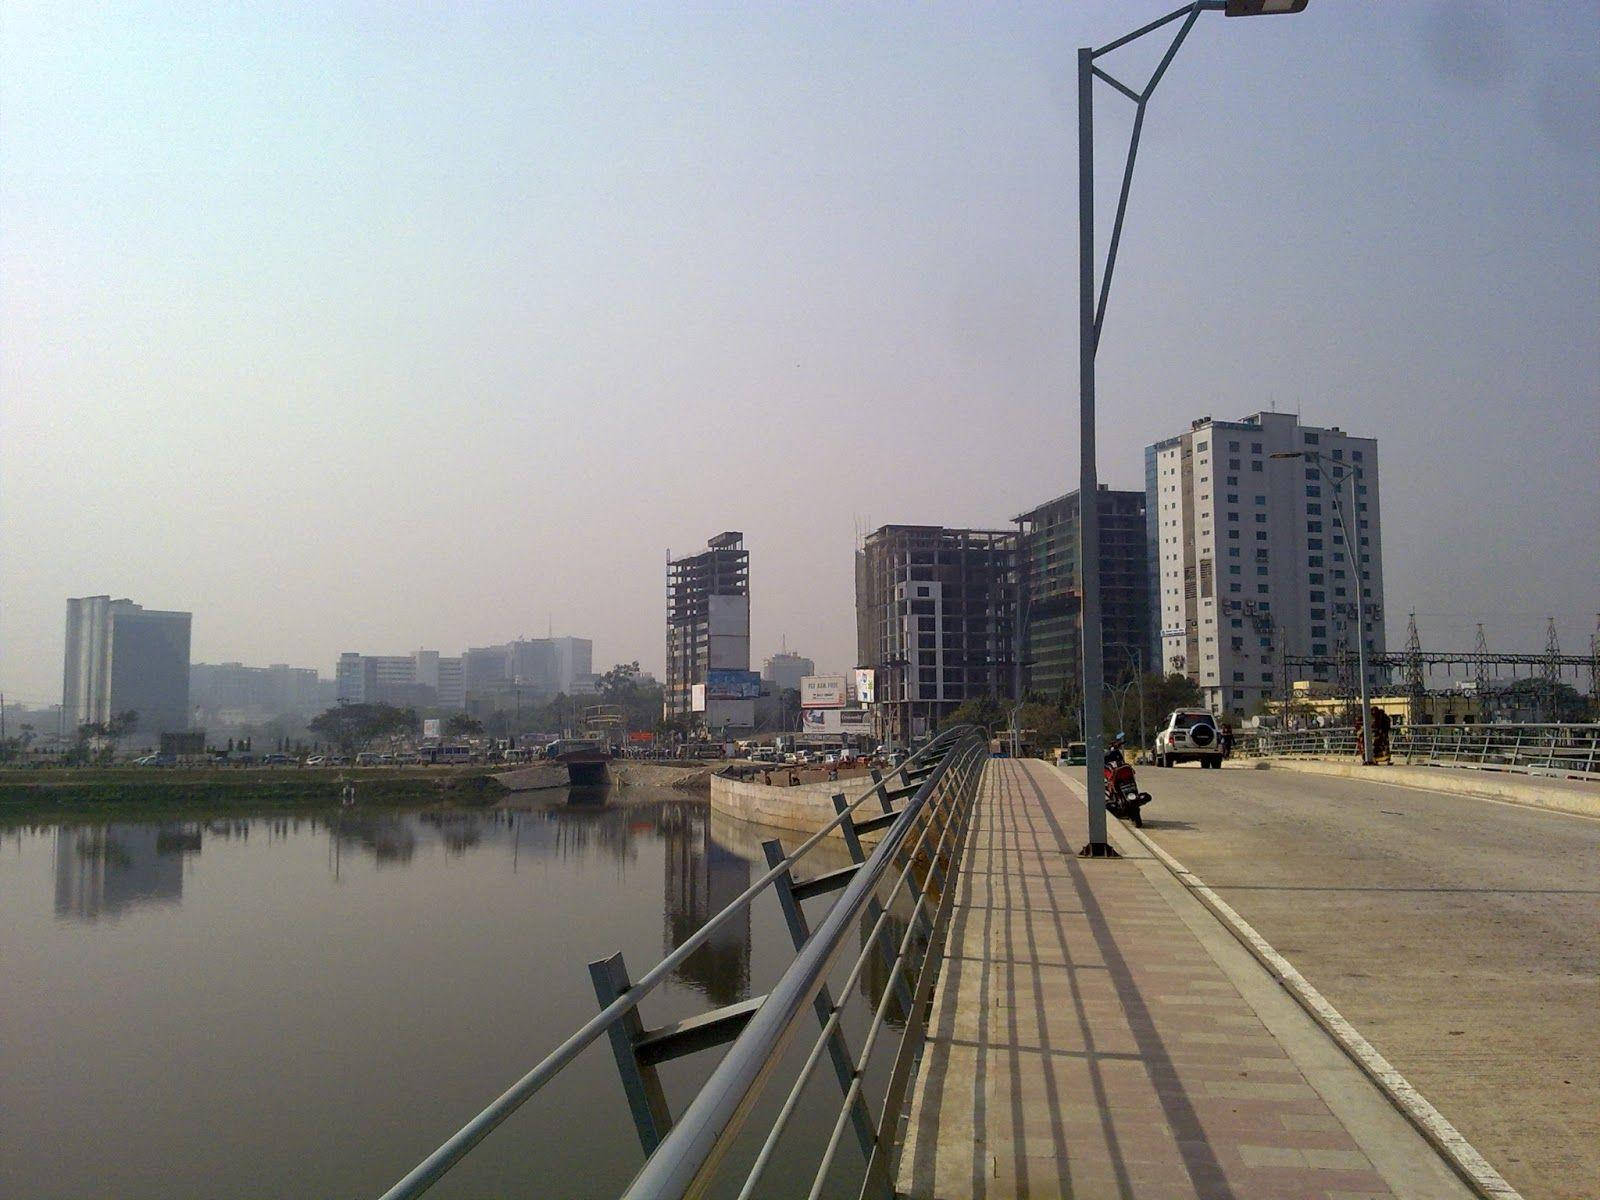 Lakefront Hatirjheel In Bangladesh Dhaka Background